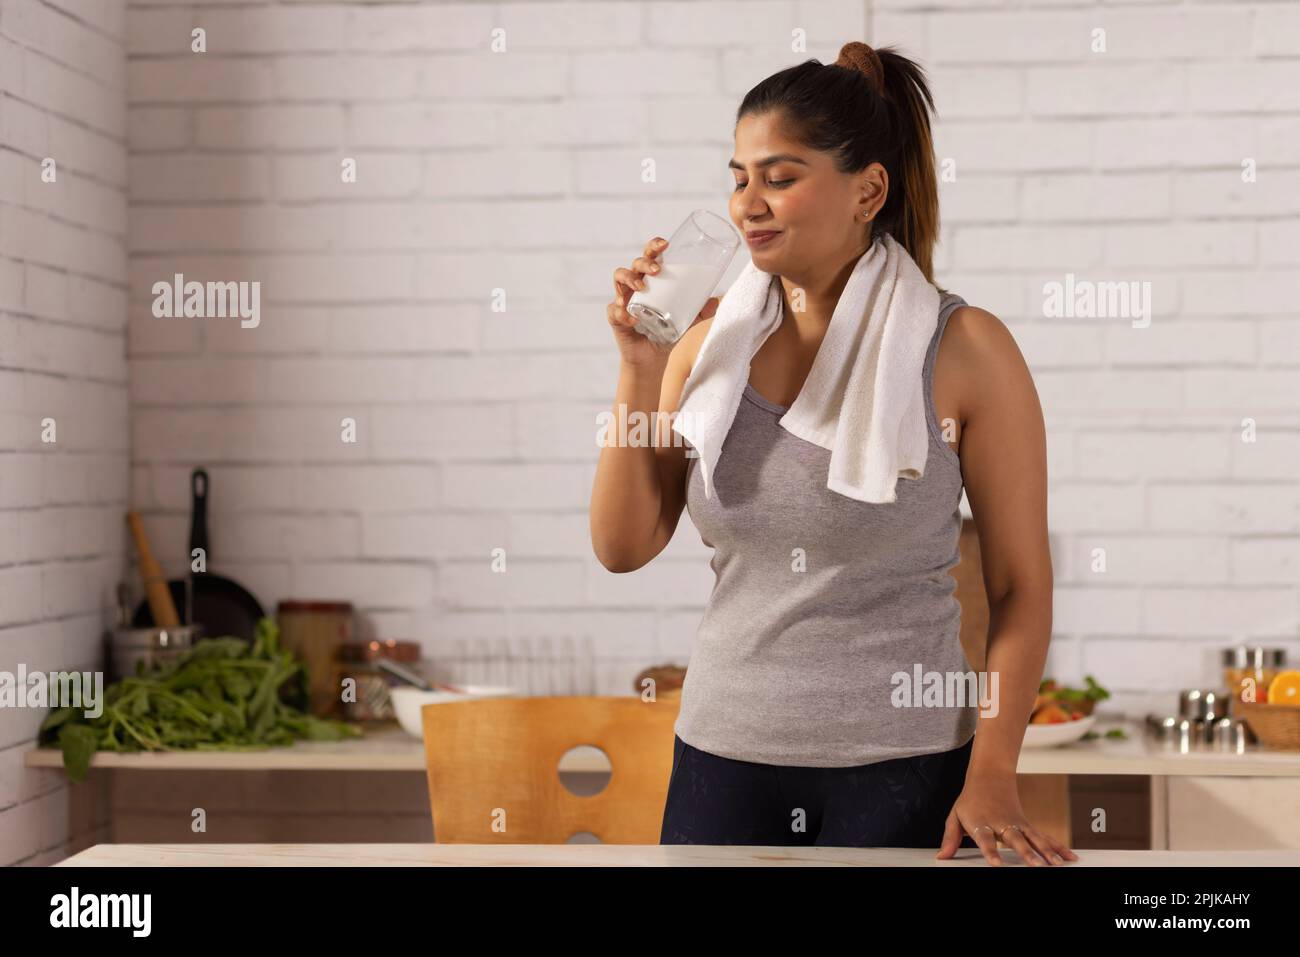 Cheerful woman drinking milk in kitchen Stock Photo